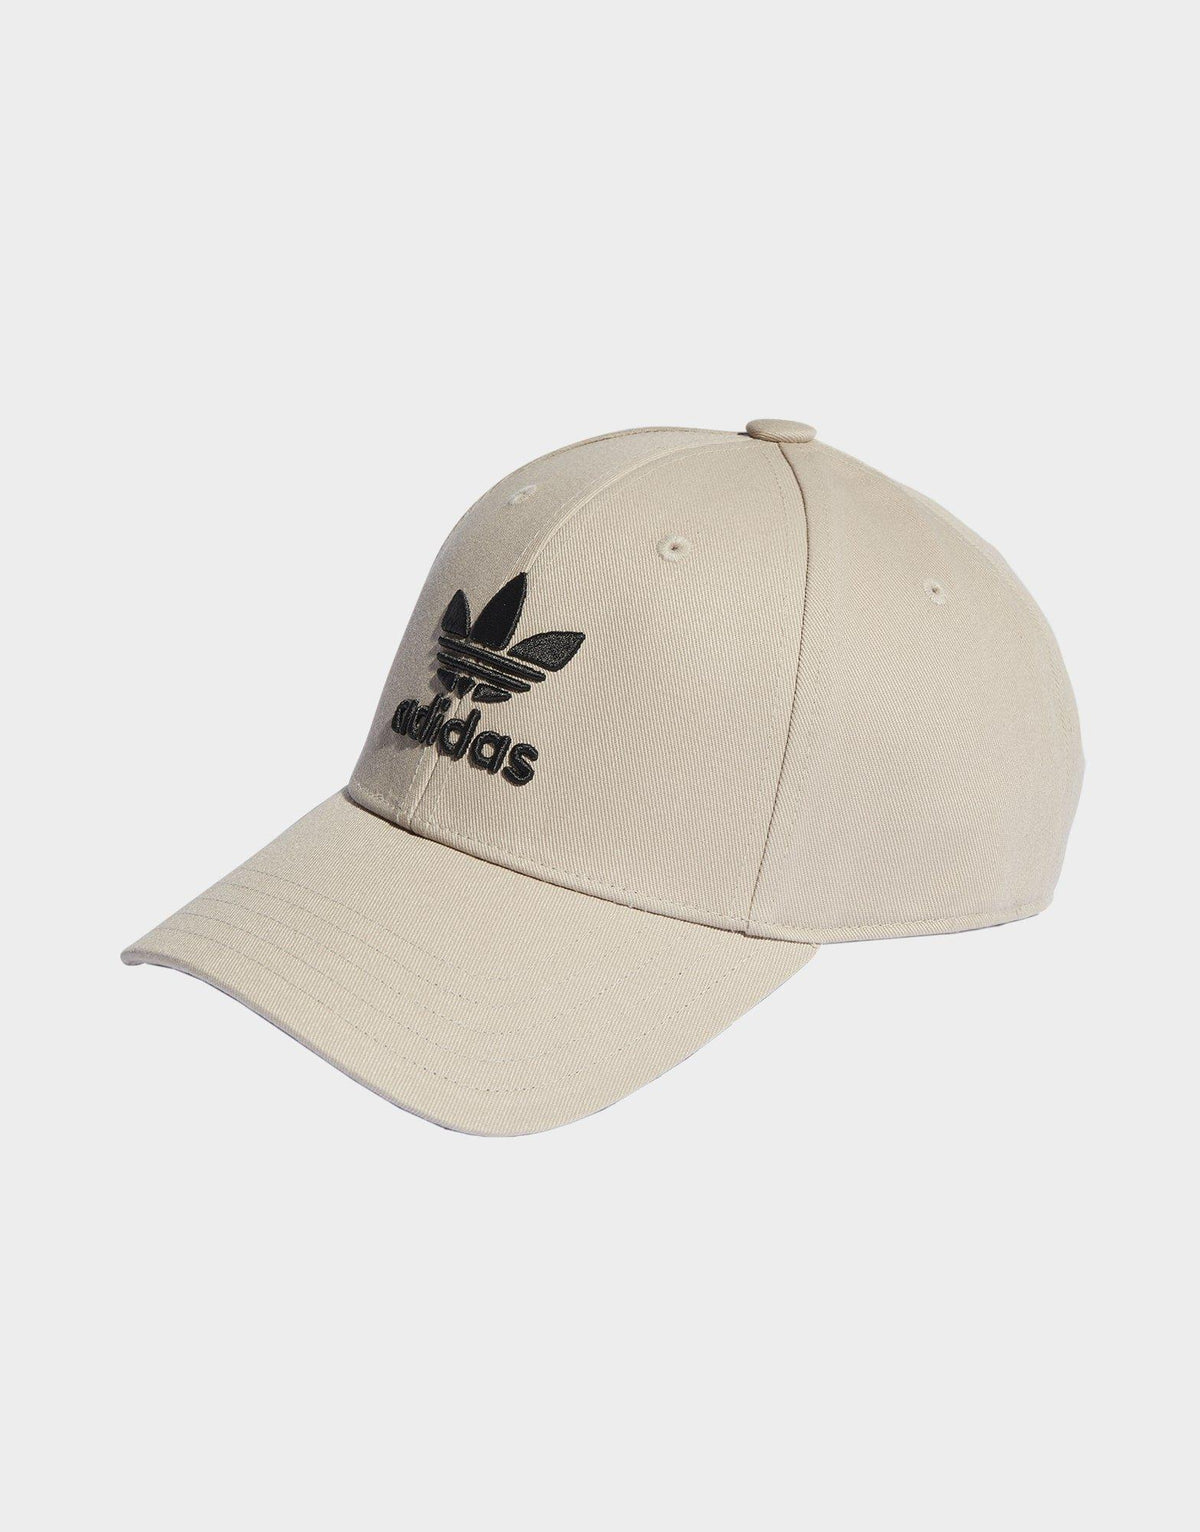 כובע מצחייה לוגו